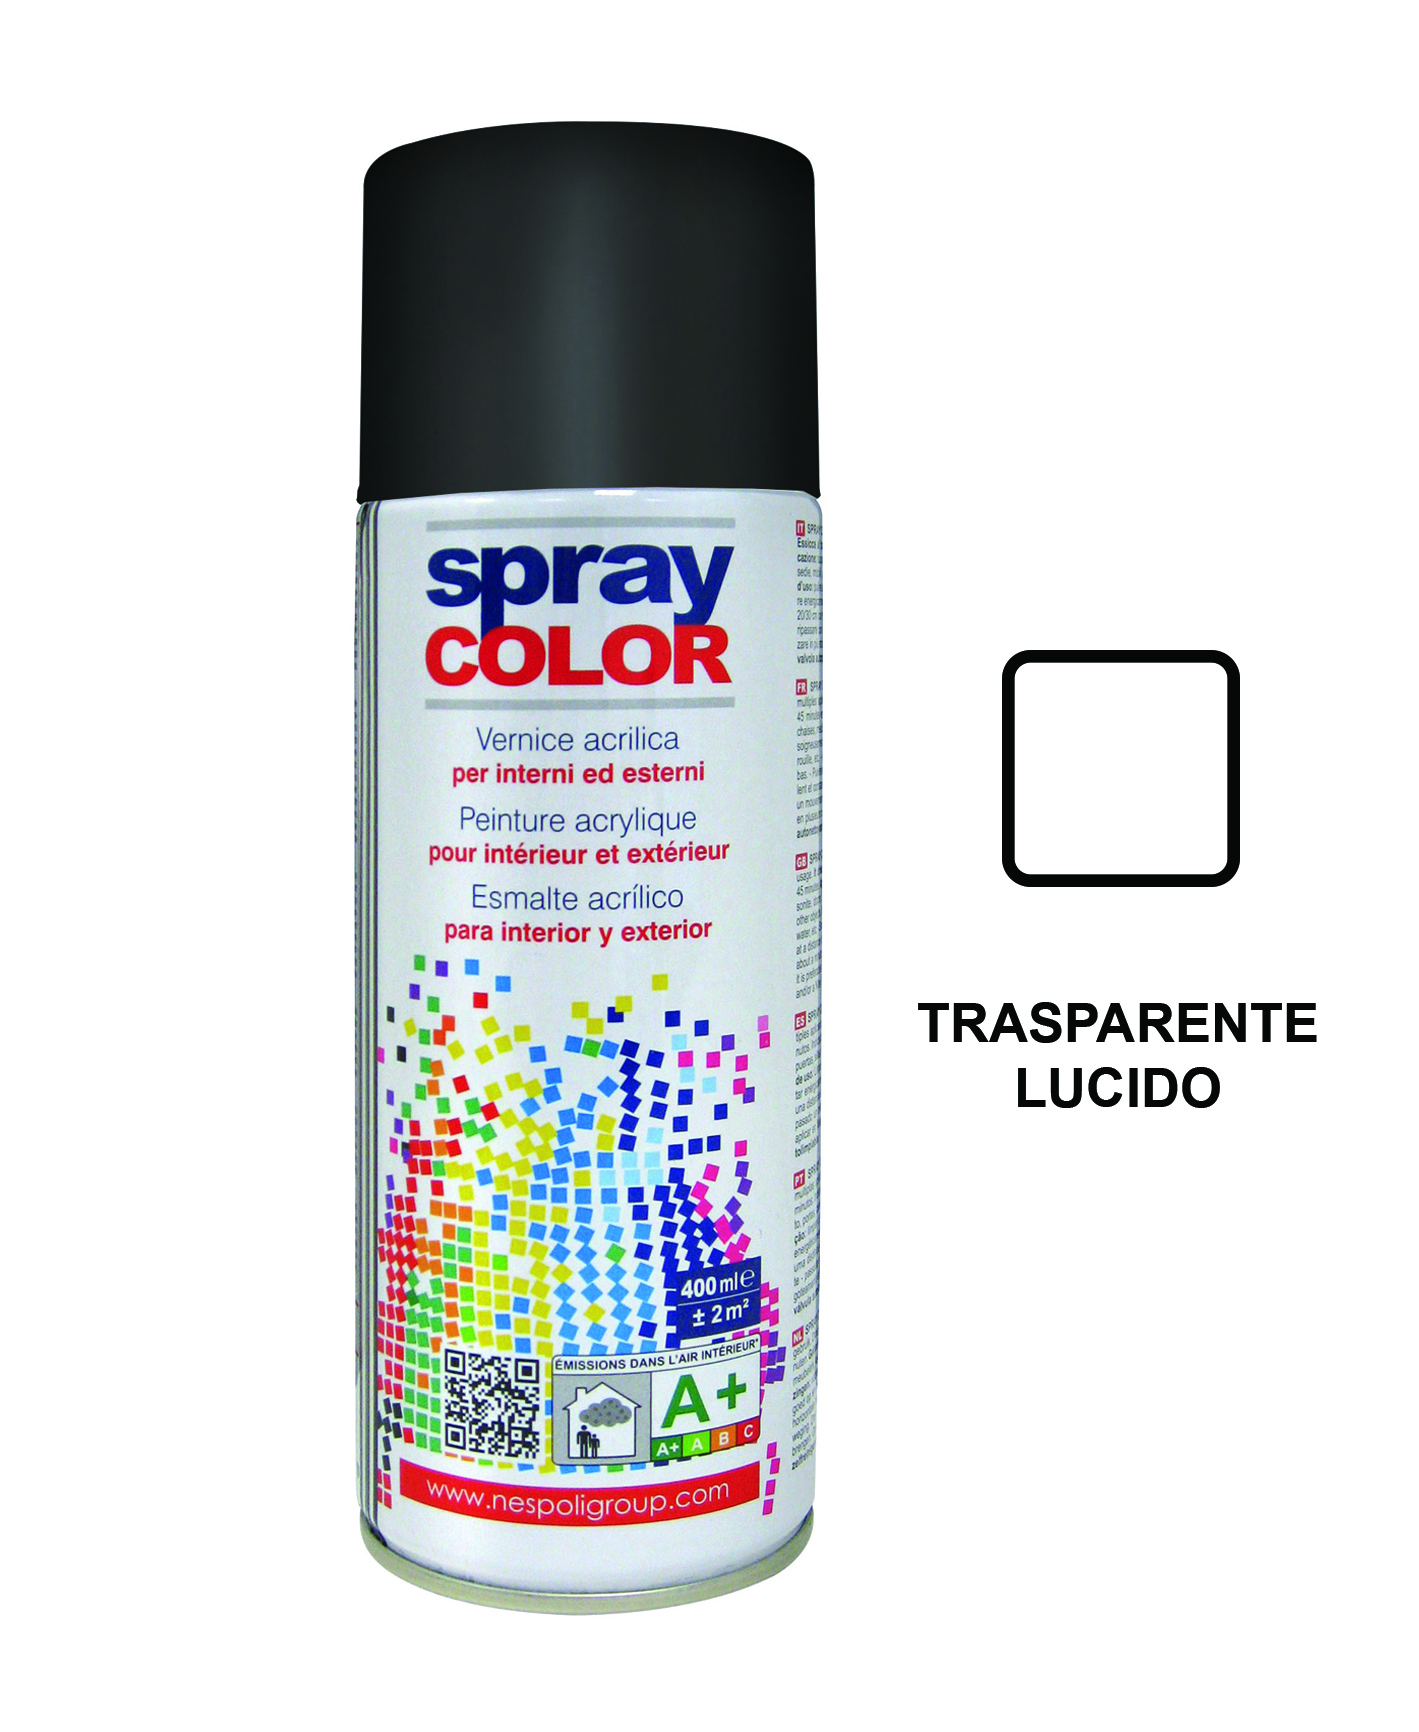 Spraycolor trasparente lucido 400ml